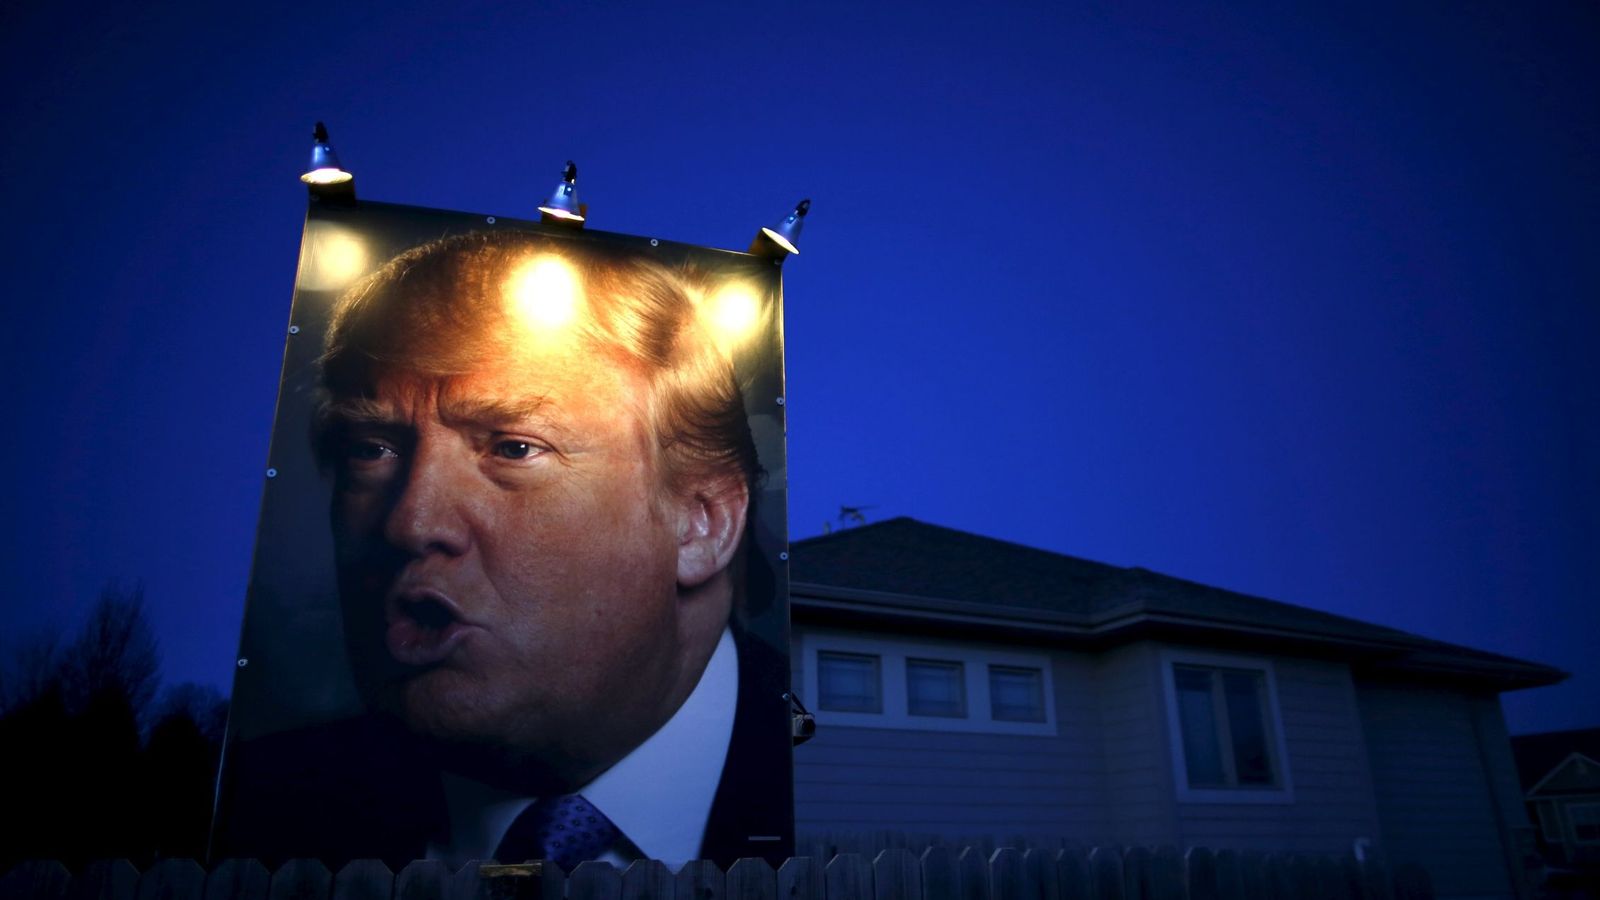 Foto: Un retrato de Donald Trump en el exterior de una casa en West Des Moines, Iowa, el 15 de enero de 2016. (Reuters)